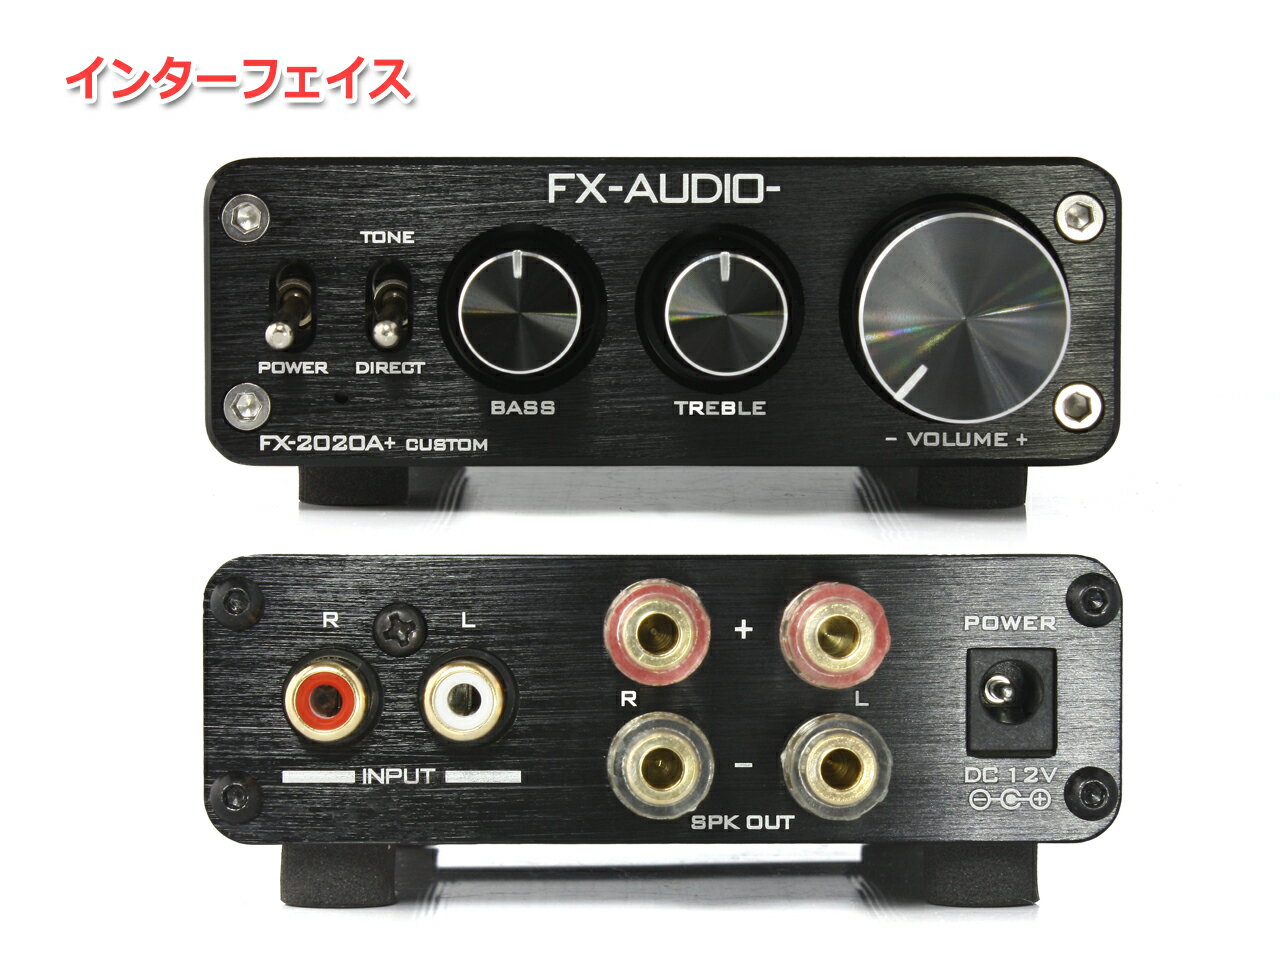 【送料無料】FX-AUDIO- FX-2020A+ CUSTOM [ブラック]TRIPATH製TA2020-020搭載デジタルアンプ